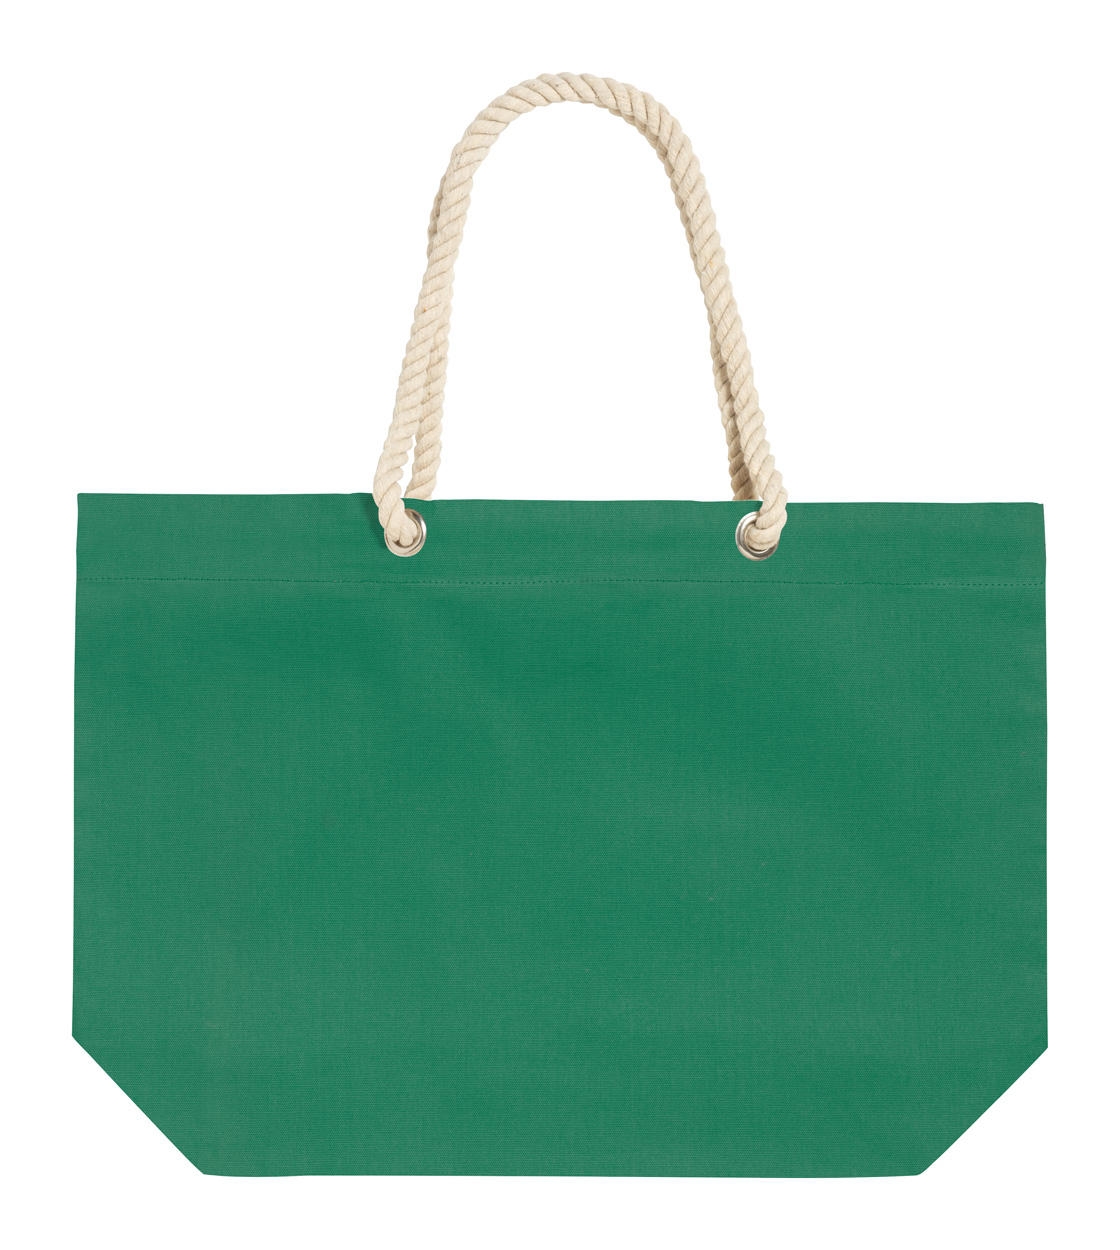 Kauly plážová taška - zelená